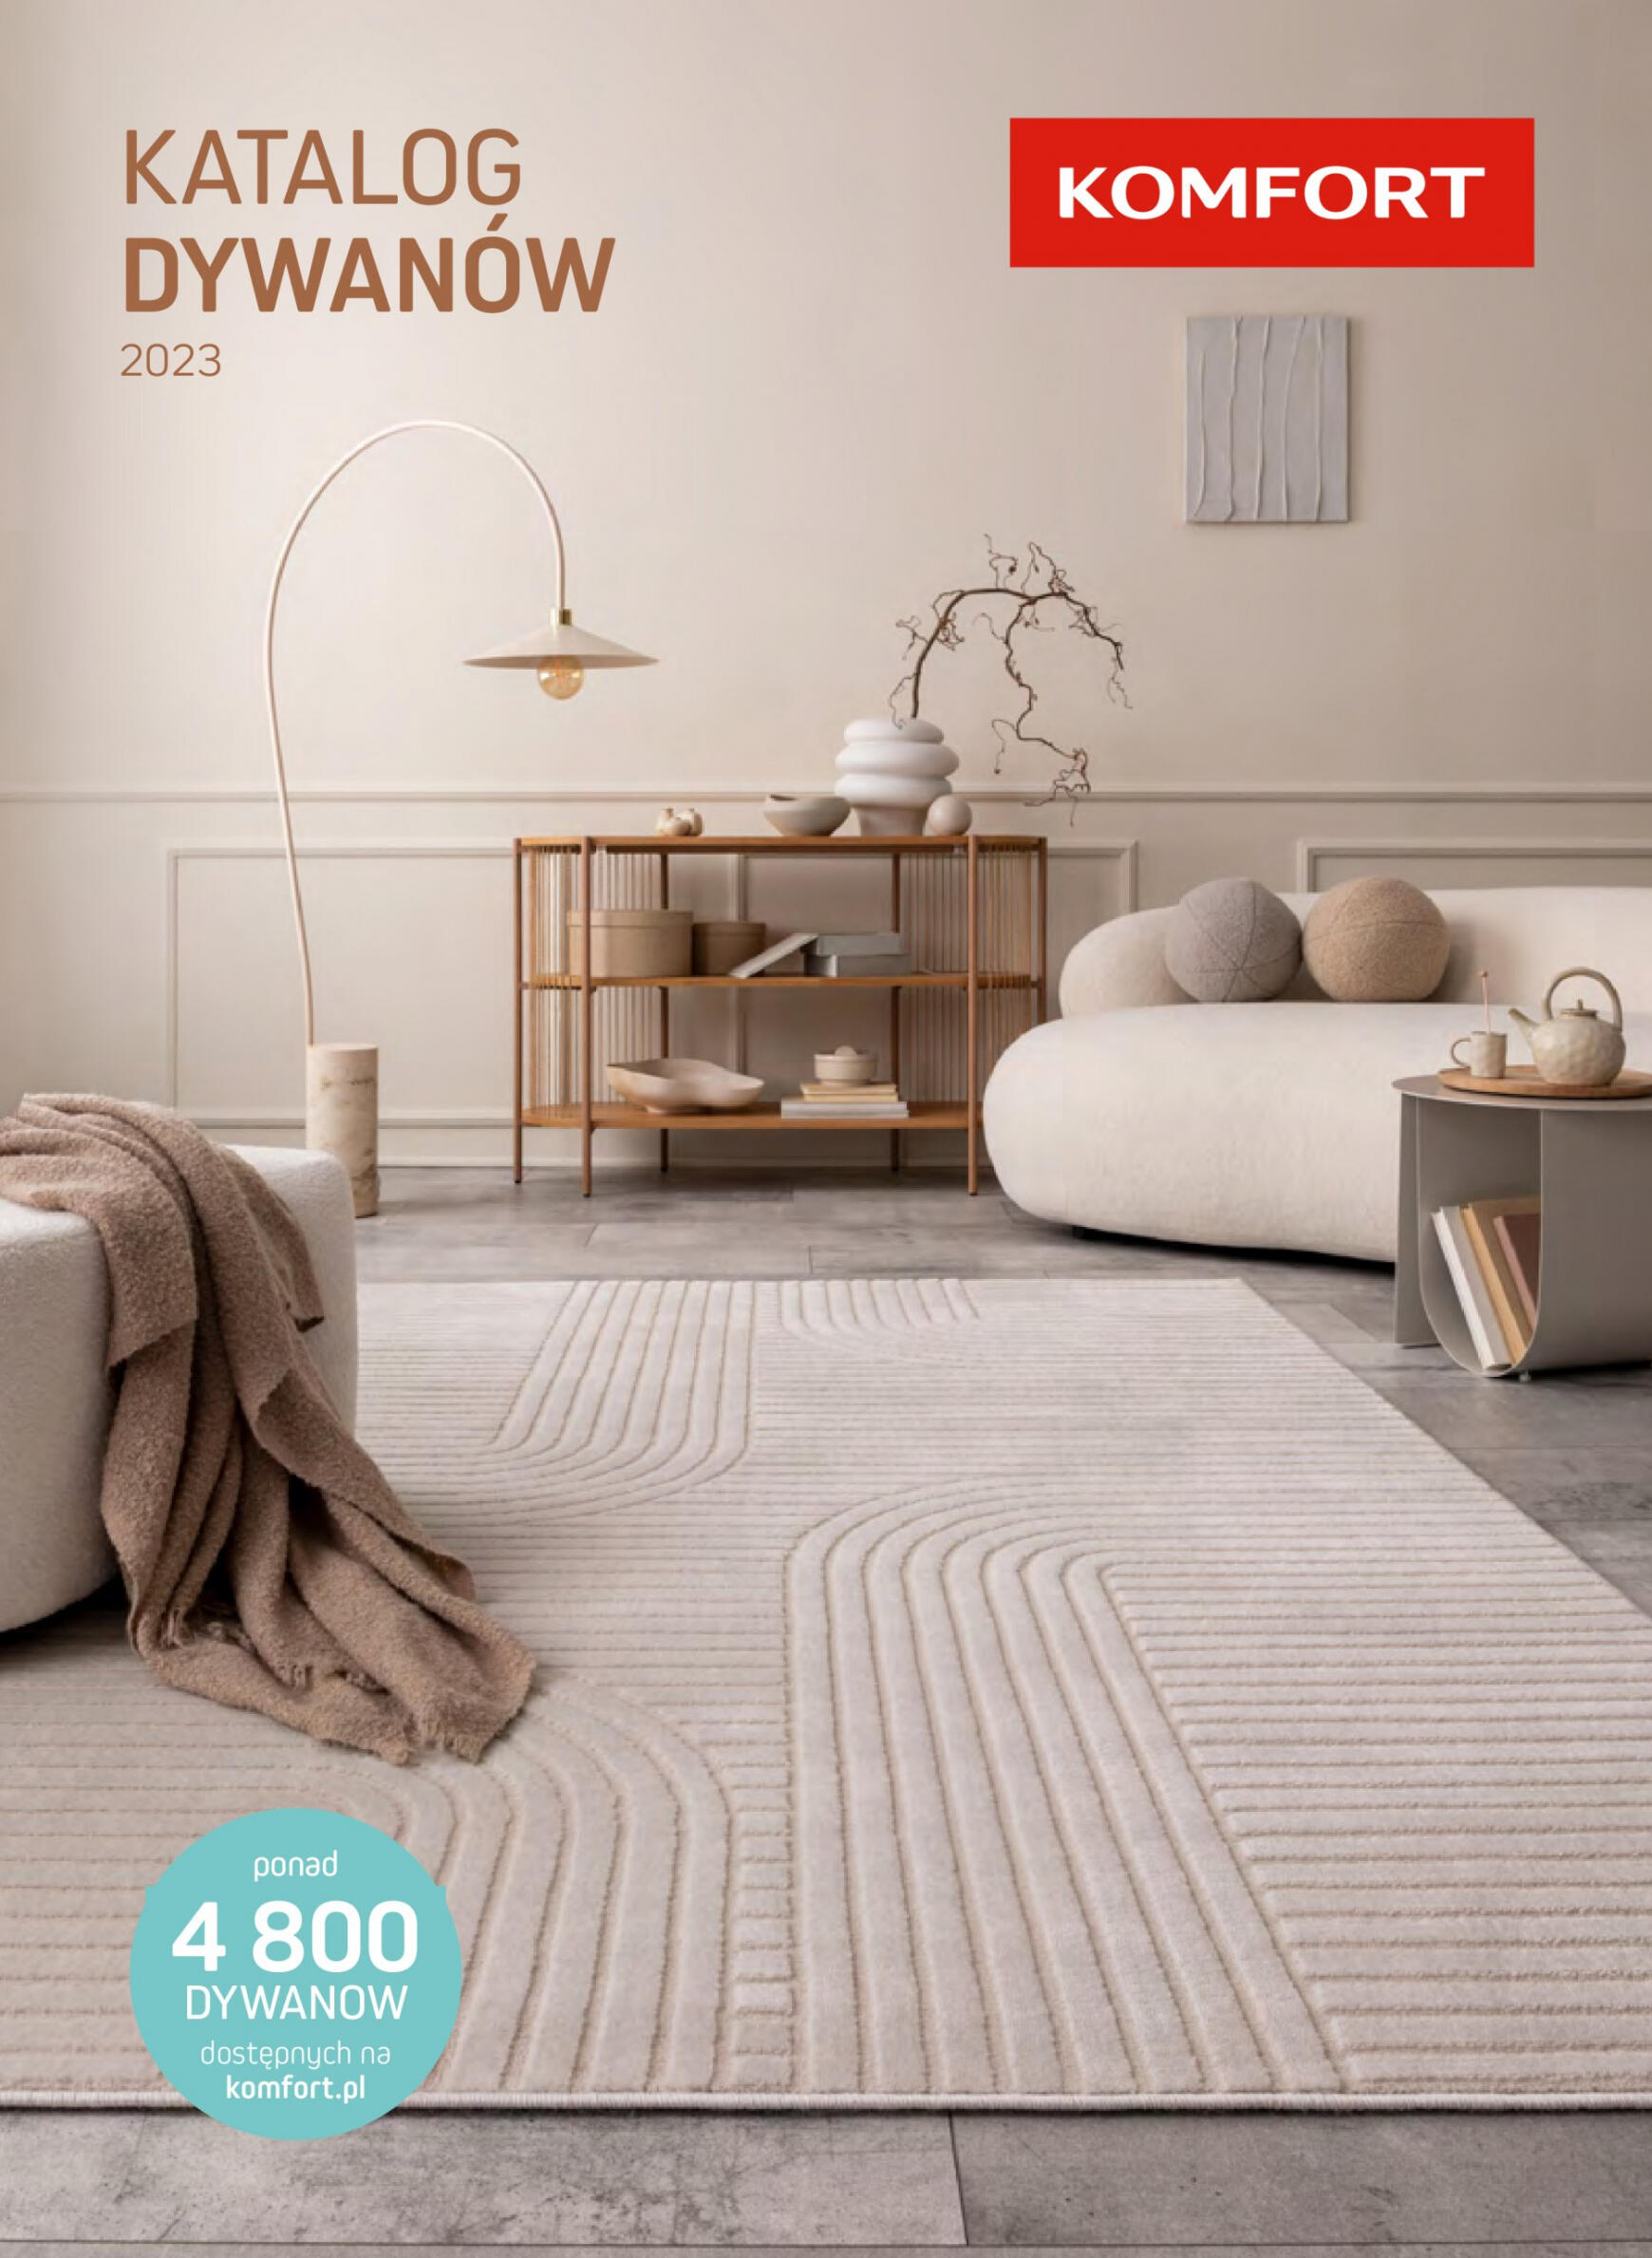 komfort - Komfort - Katalog dywany